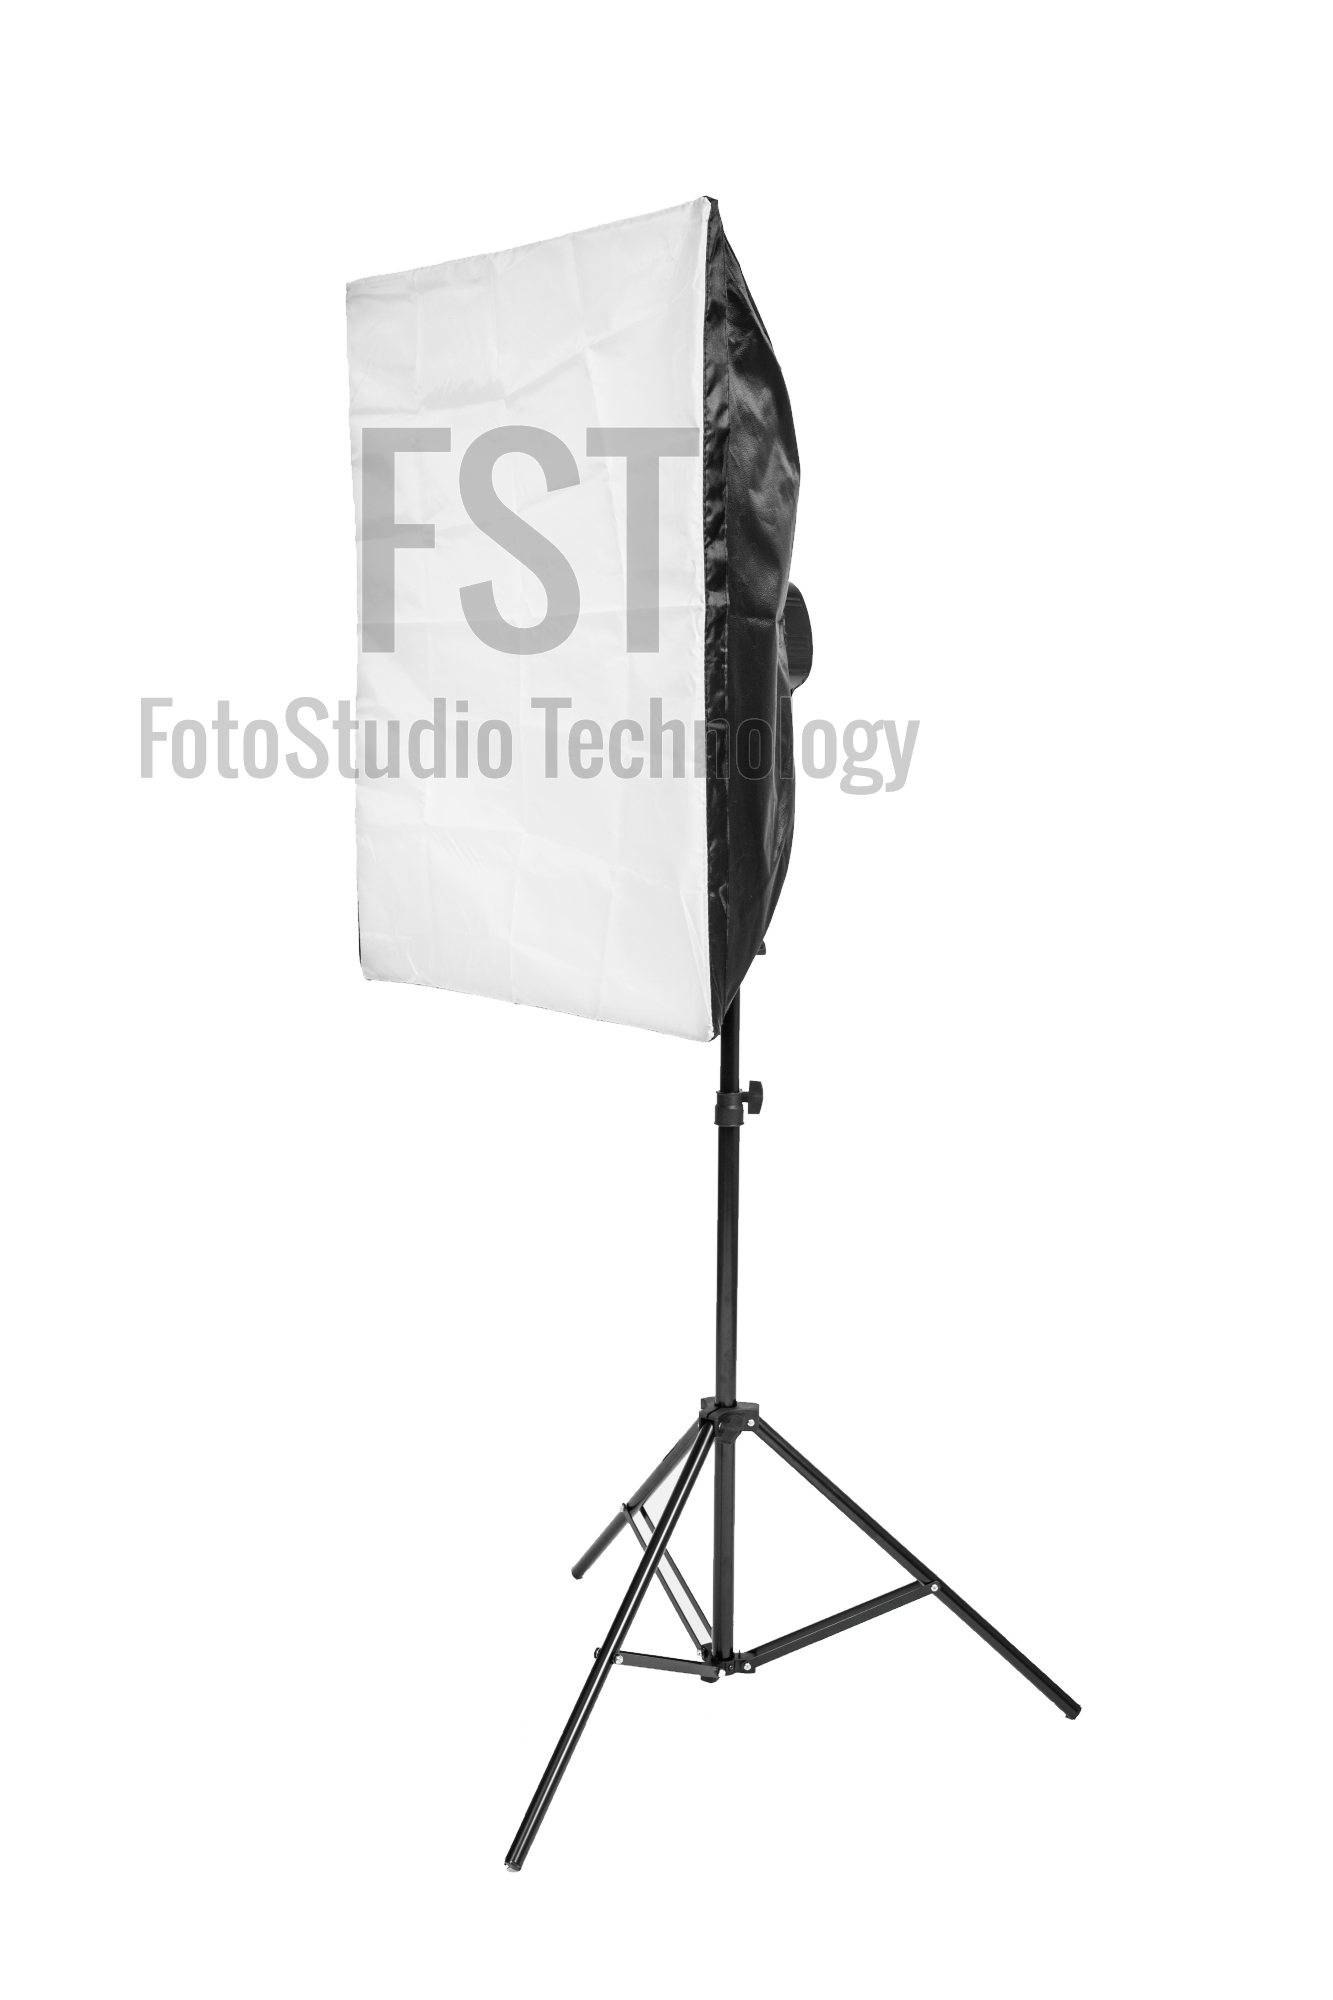 Комплект импульсного света FST E-250 Novel Kit + радиосинхронизатор FST VC-604DC в подарок!